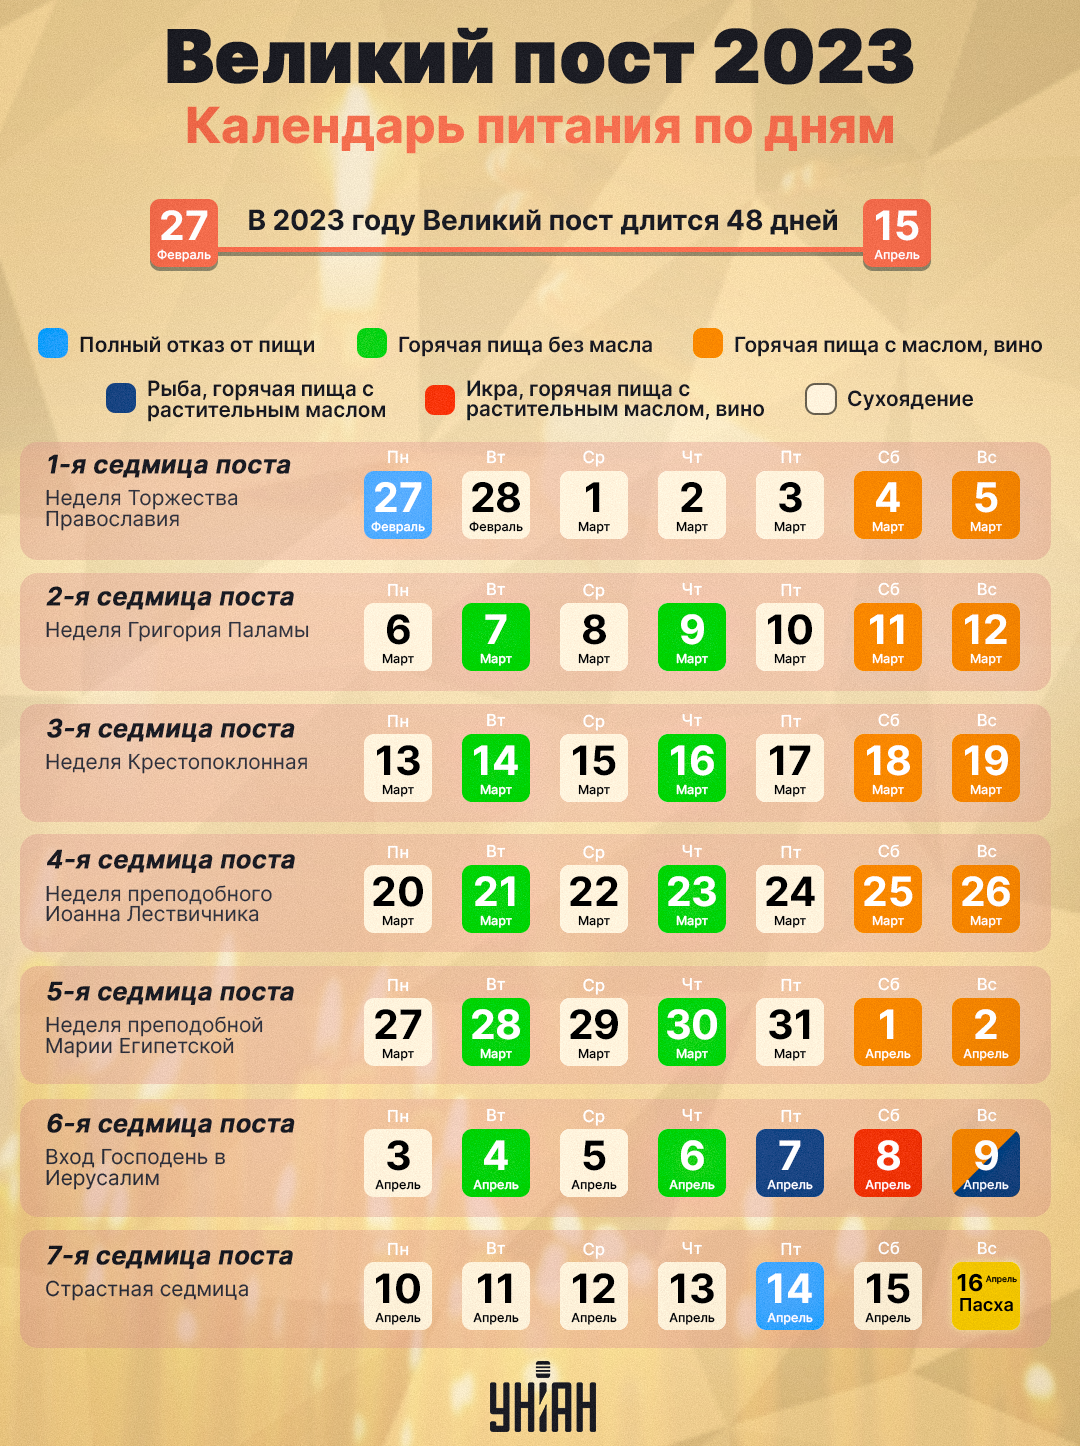 Календарь питания на Великий пост 2023 / инфографика УНИАН